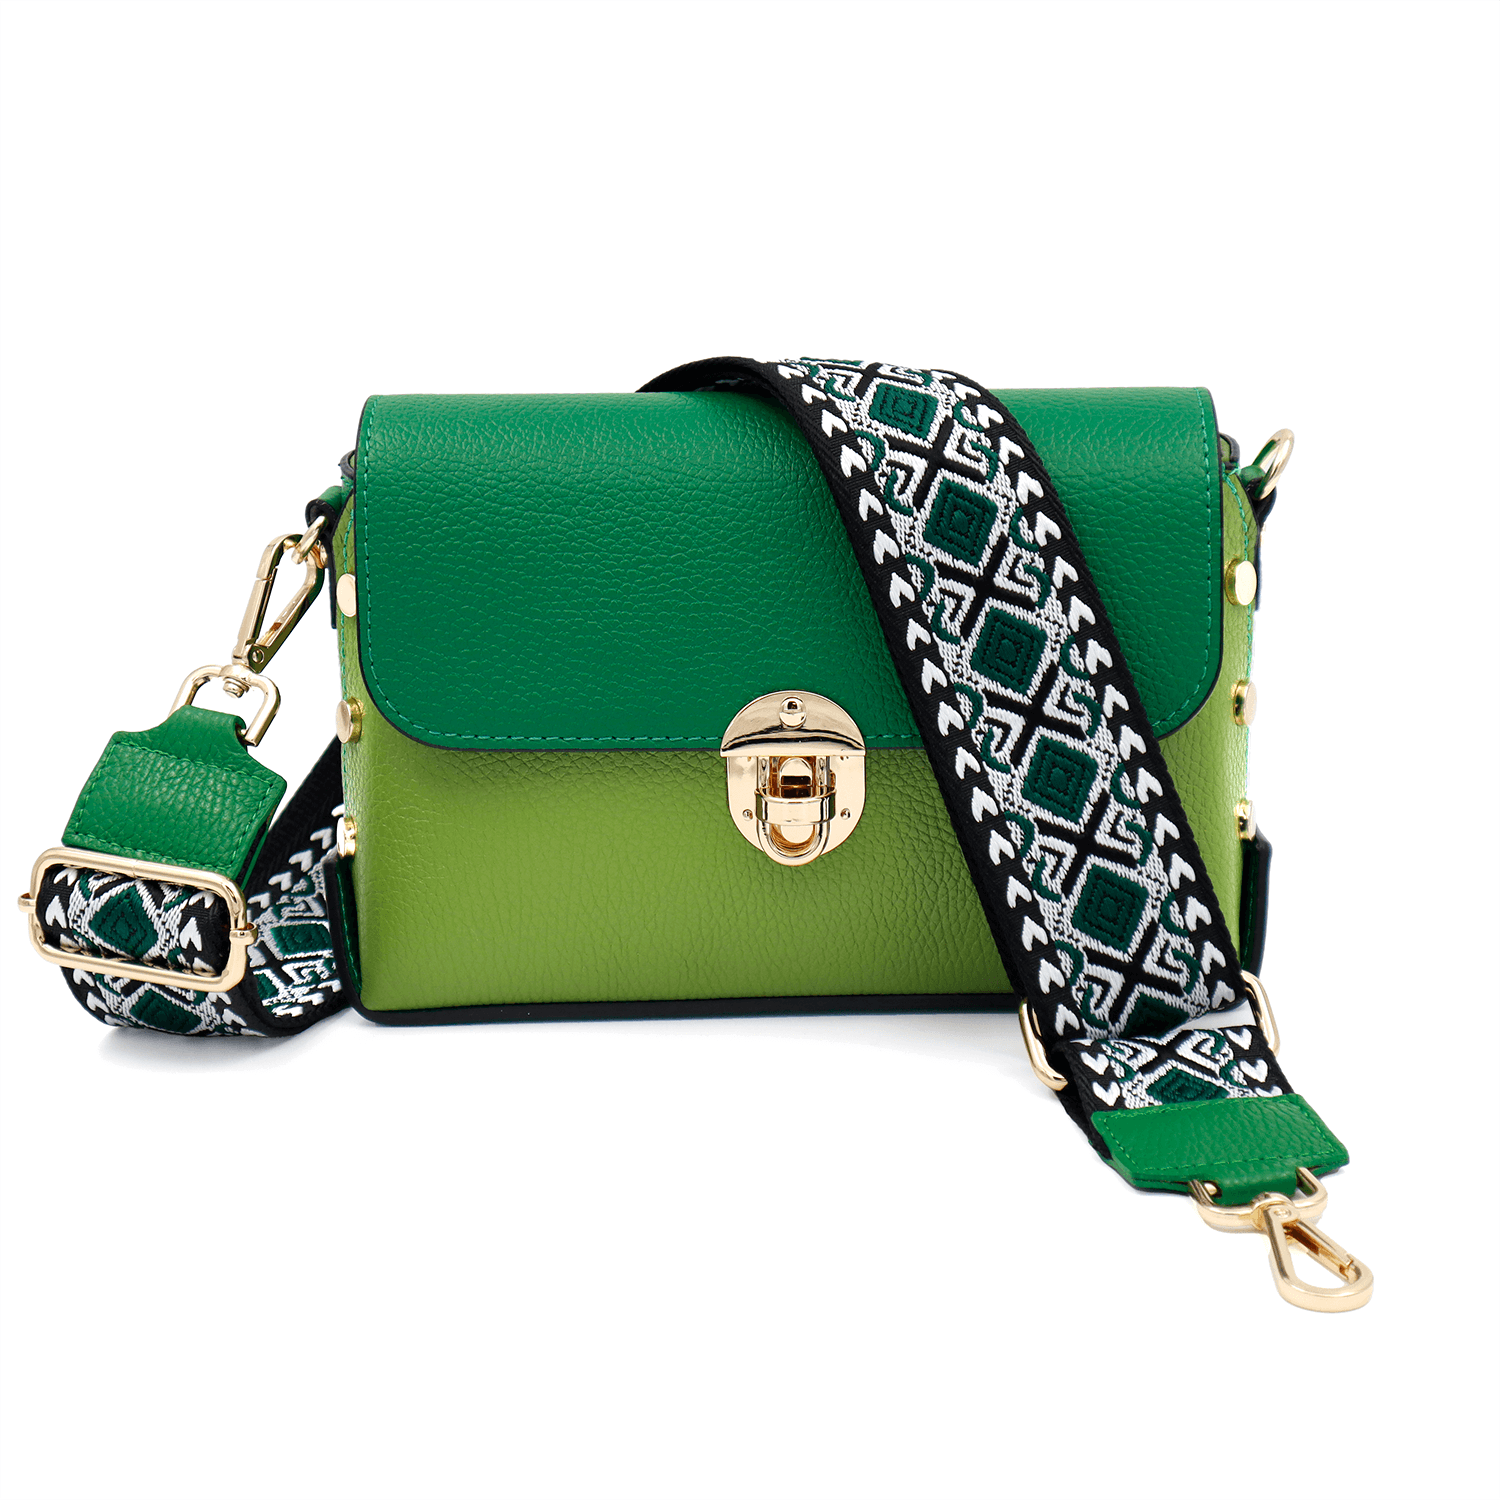 Дамска чанта от естествена кожа Antoanella - зелена